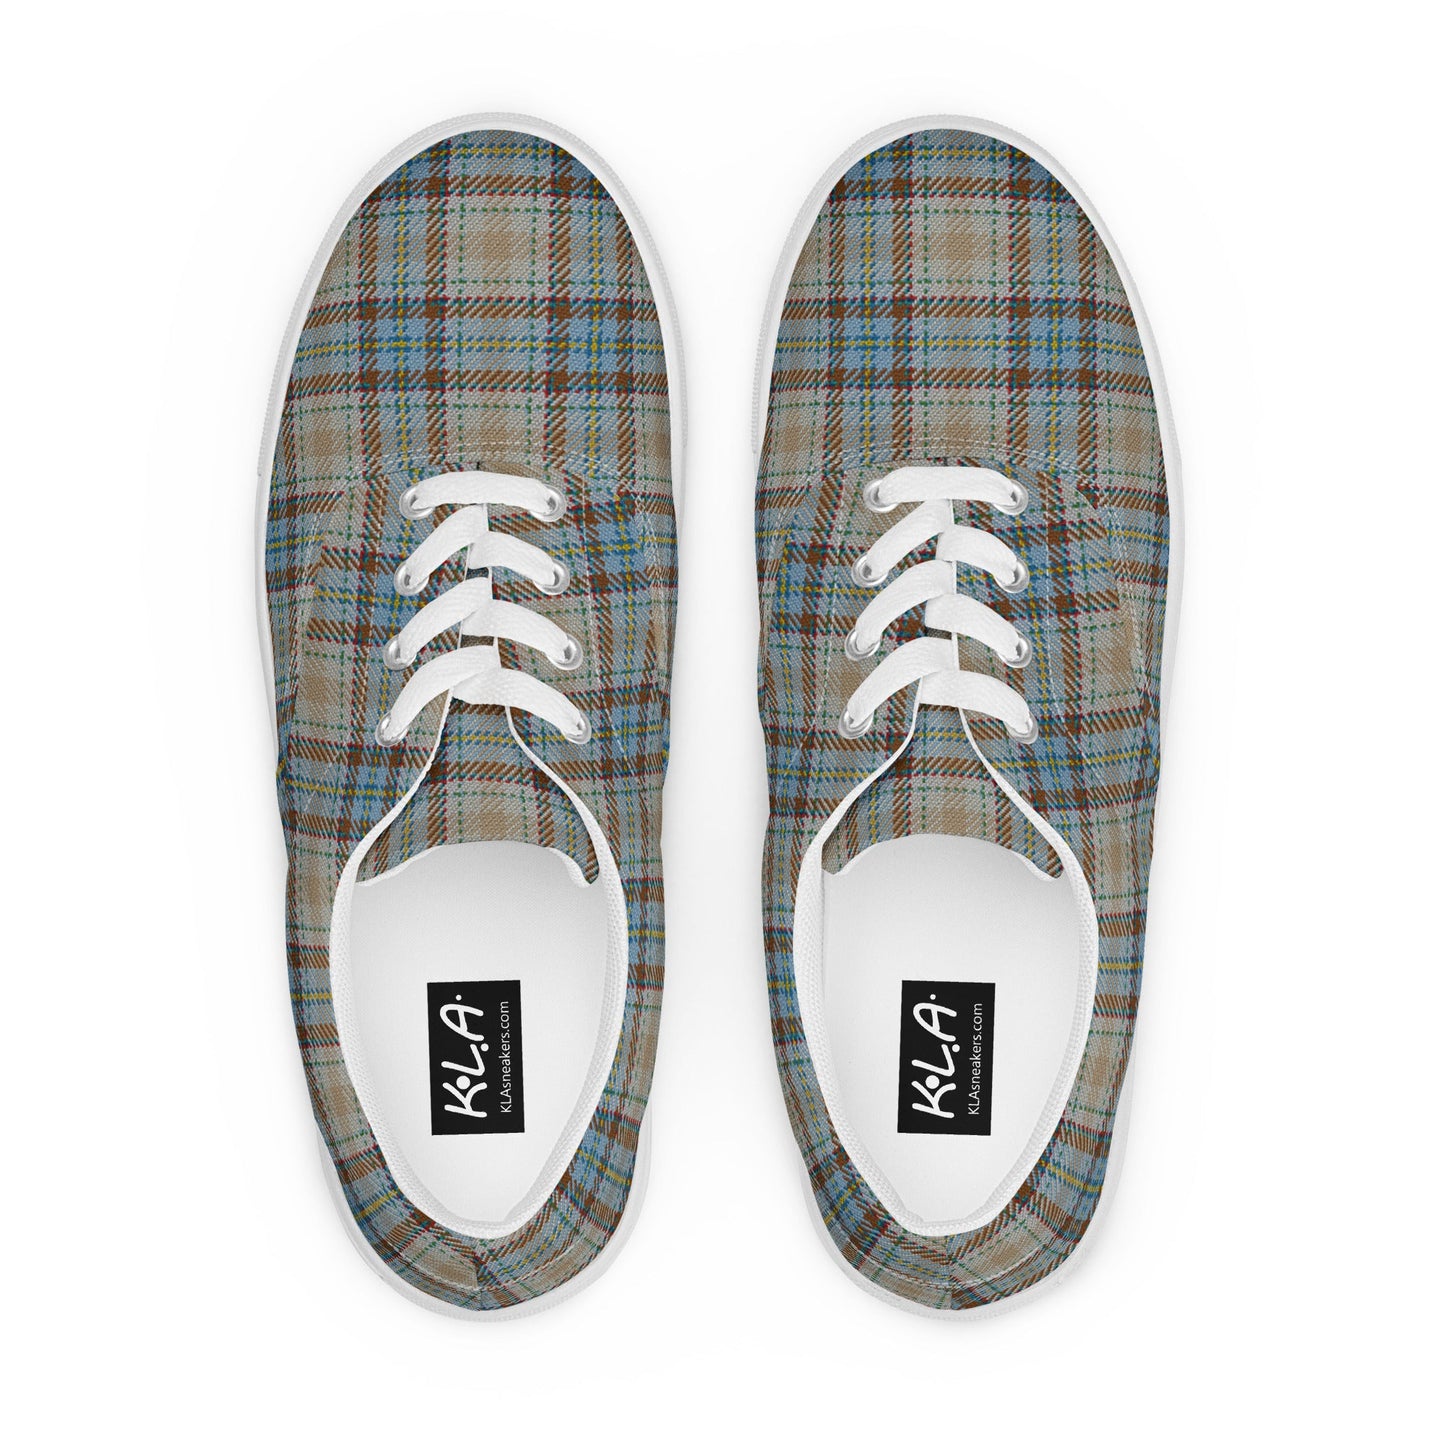 klasneakers Men’s lace-up canvas shoes - Deni Plaid Tartan